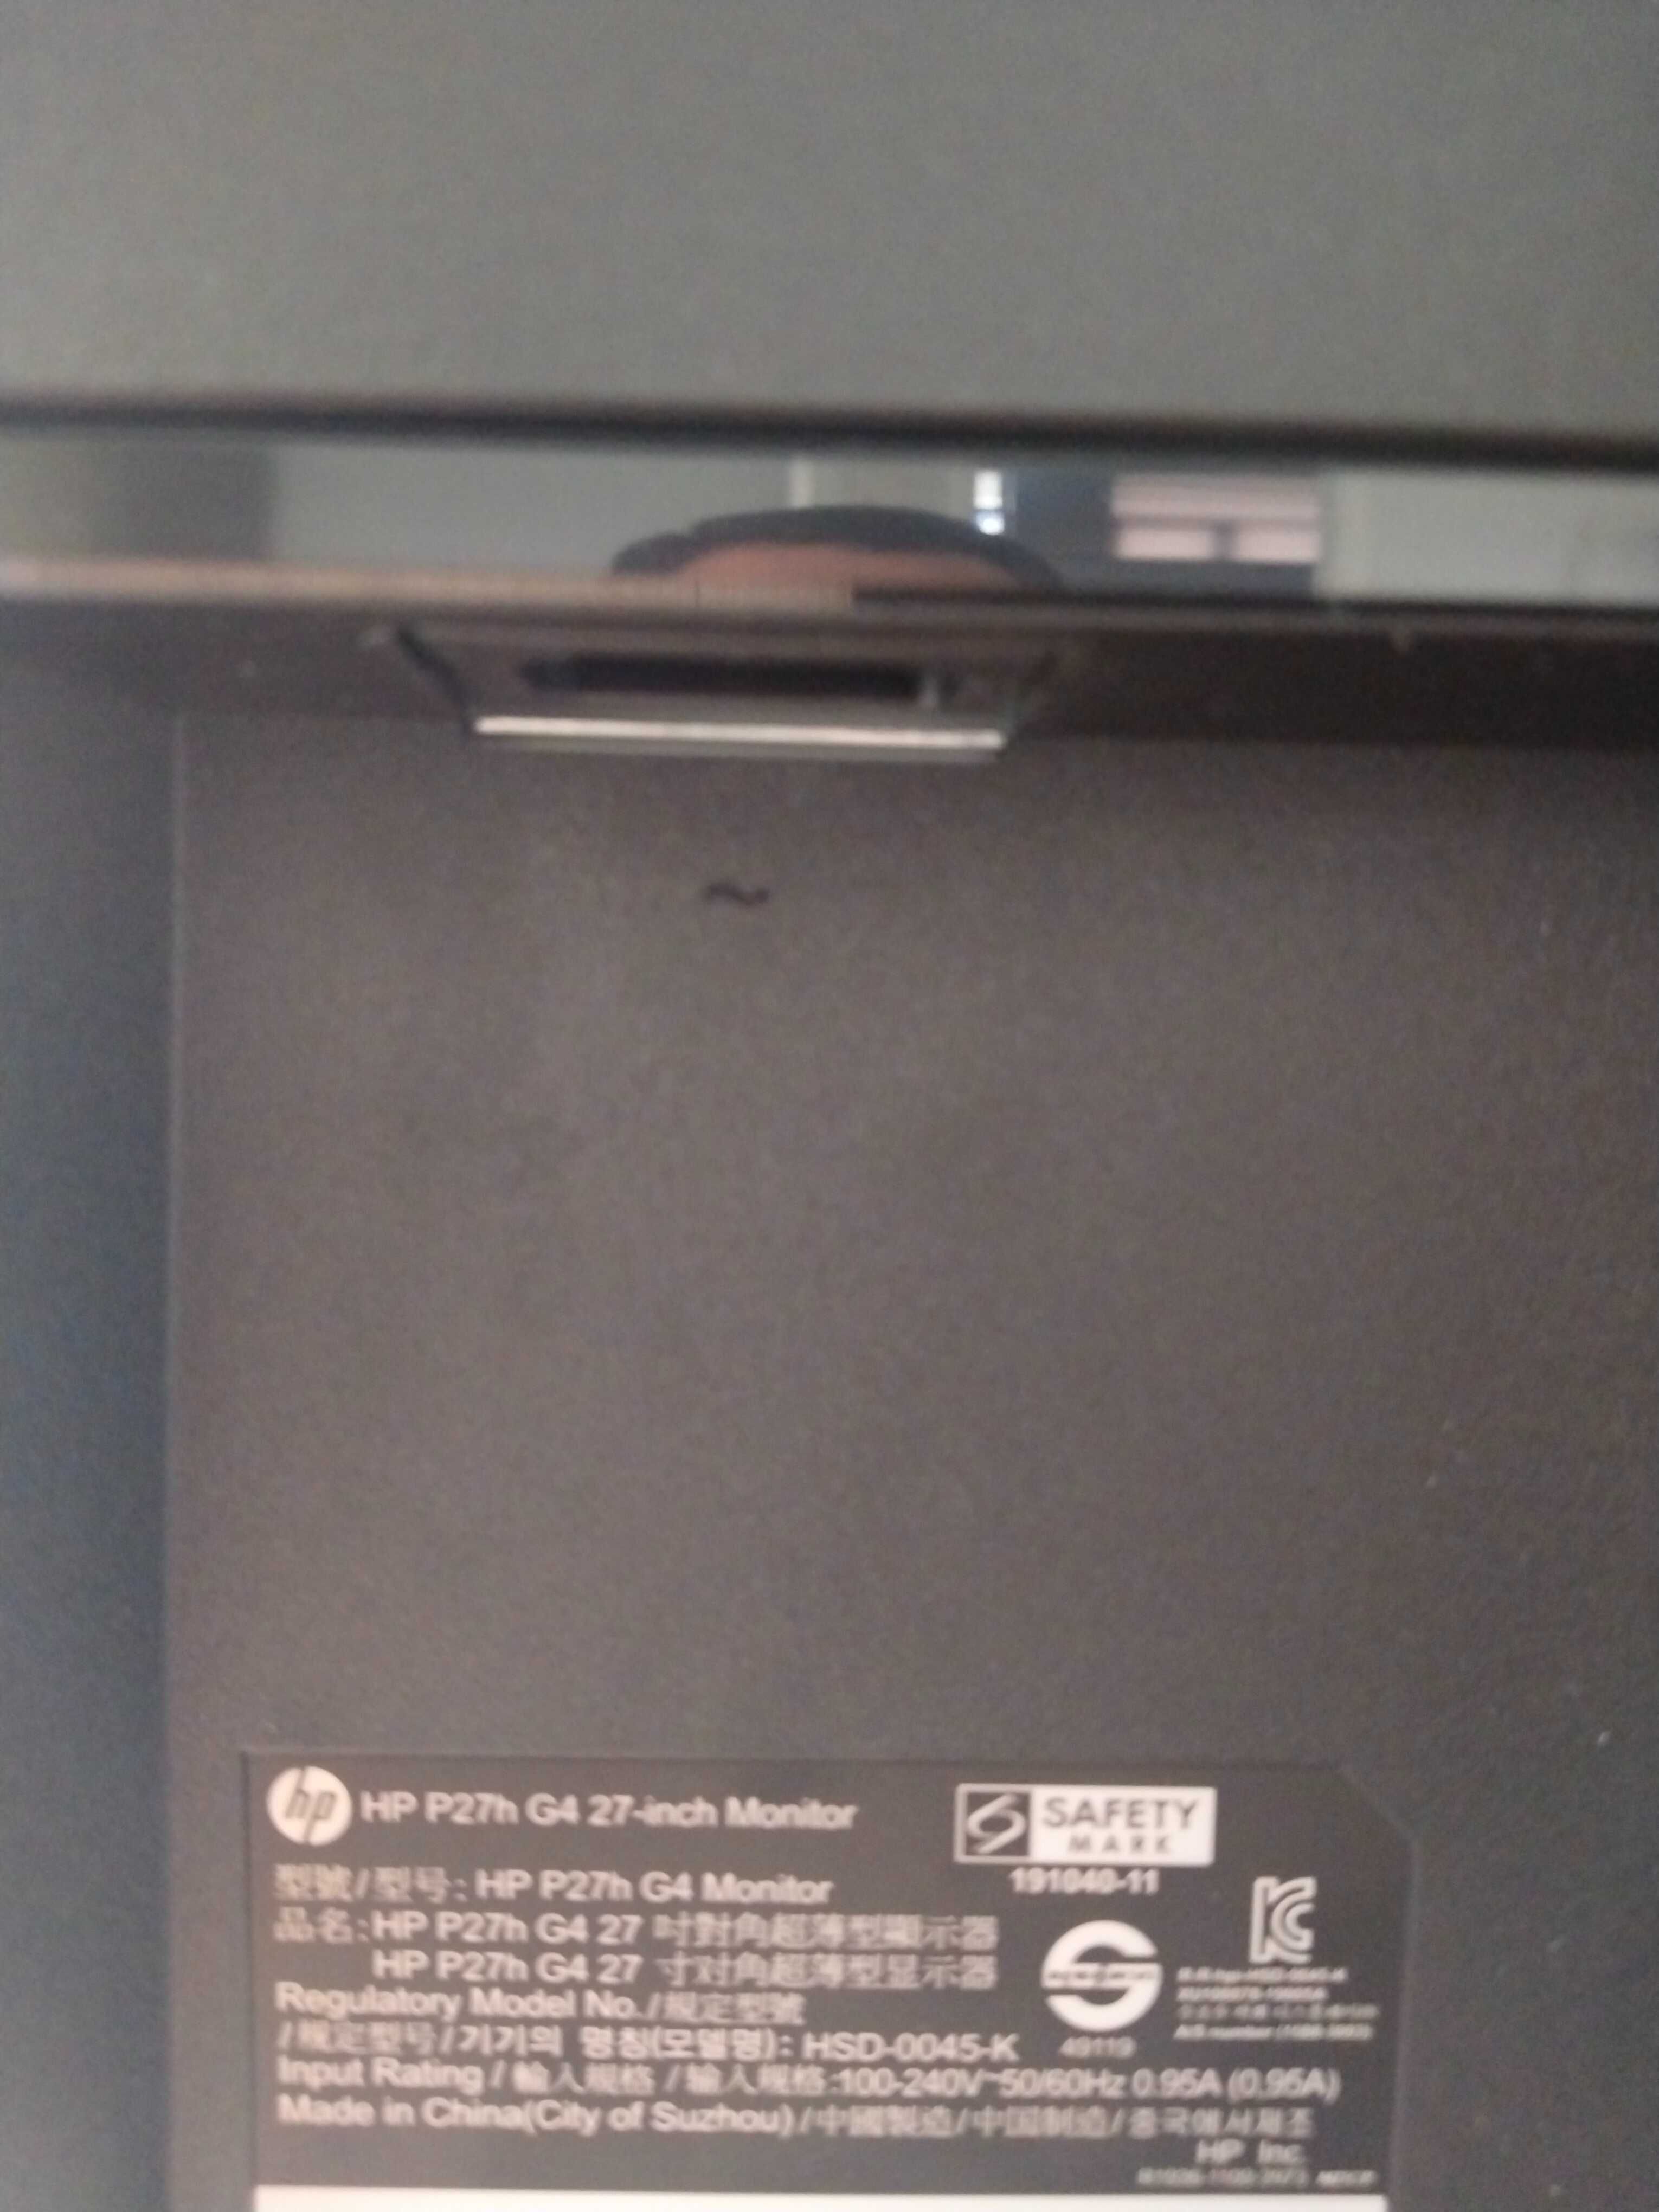 HP P27h G4 27-inch Full IPS 75Hz LED Monitor